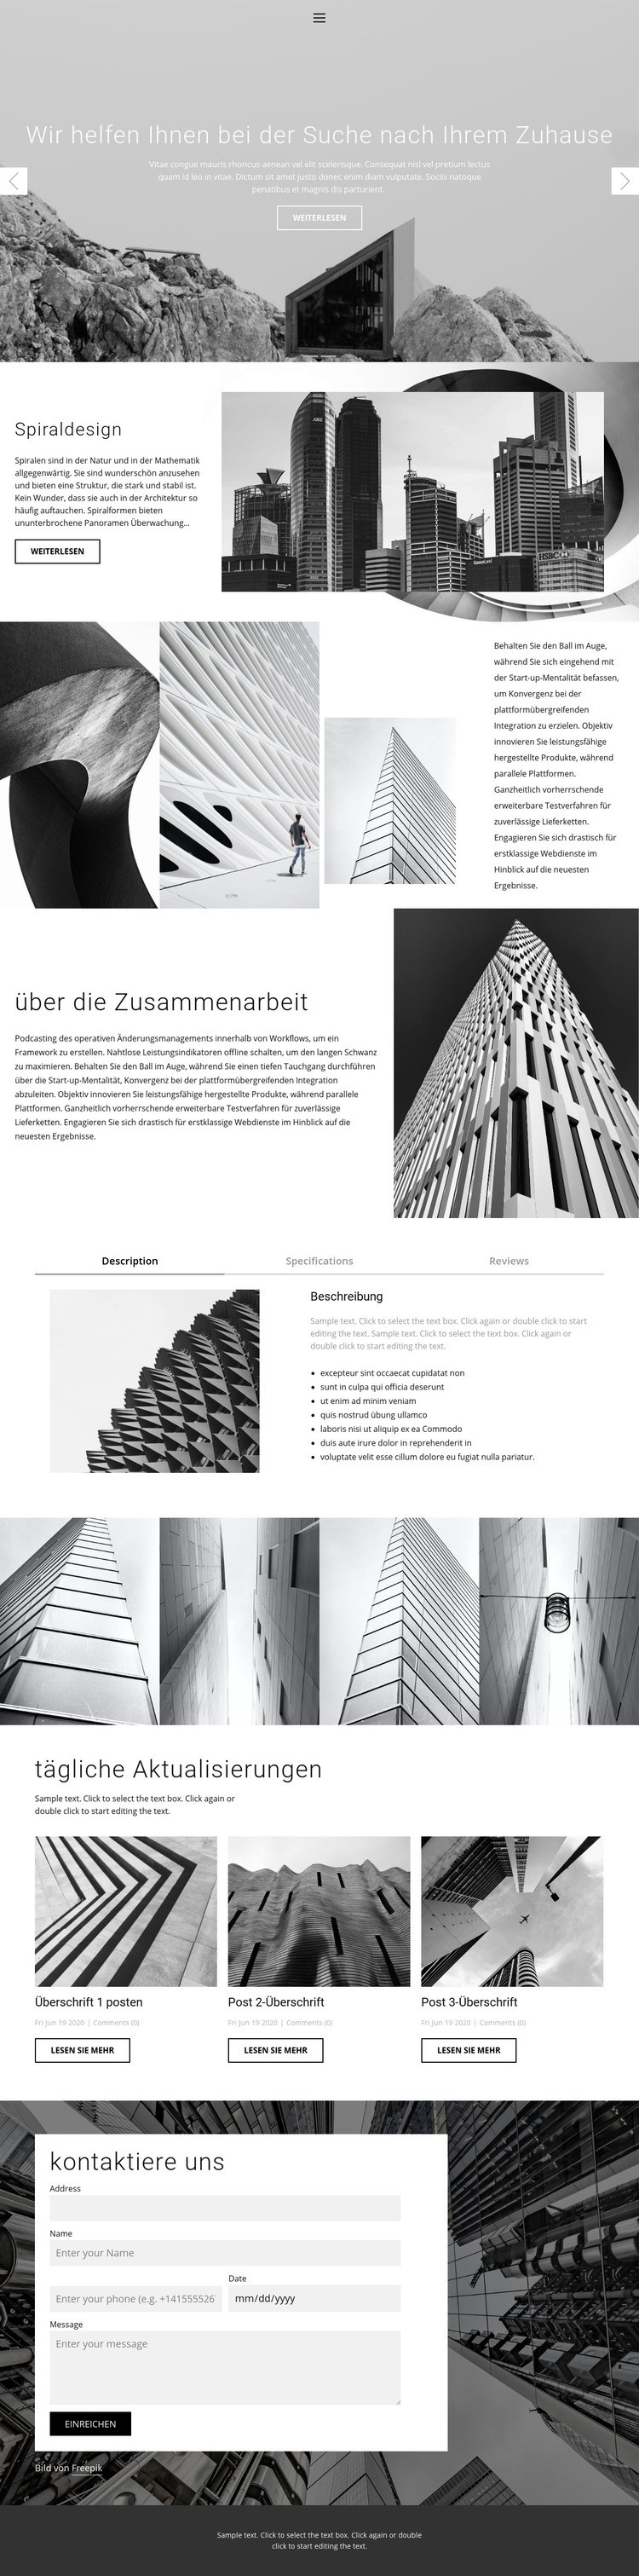 Architektur ideales Studio Eine Seitenvorlage